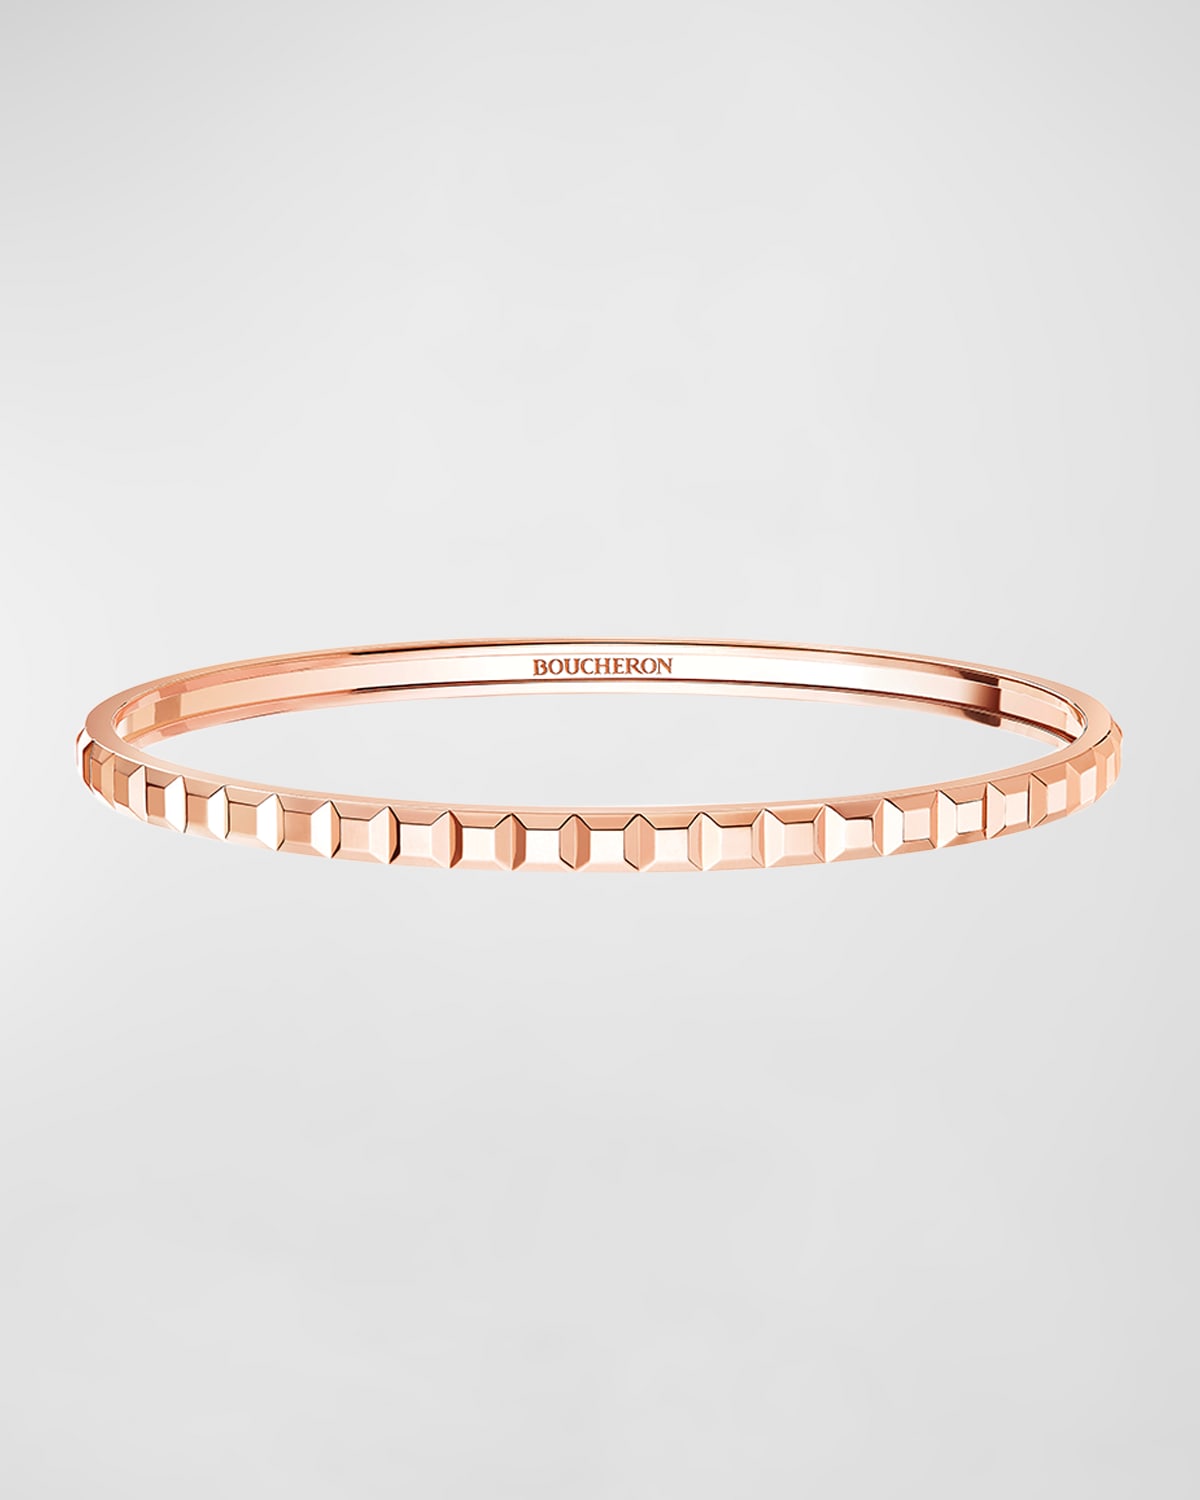 Rose Gold Quatre Clou de Paris Light Bracelet, Size 17